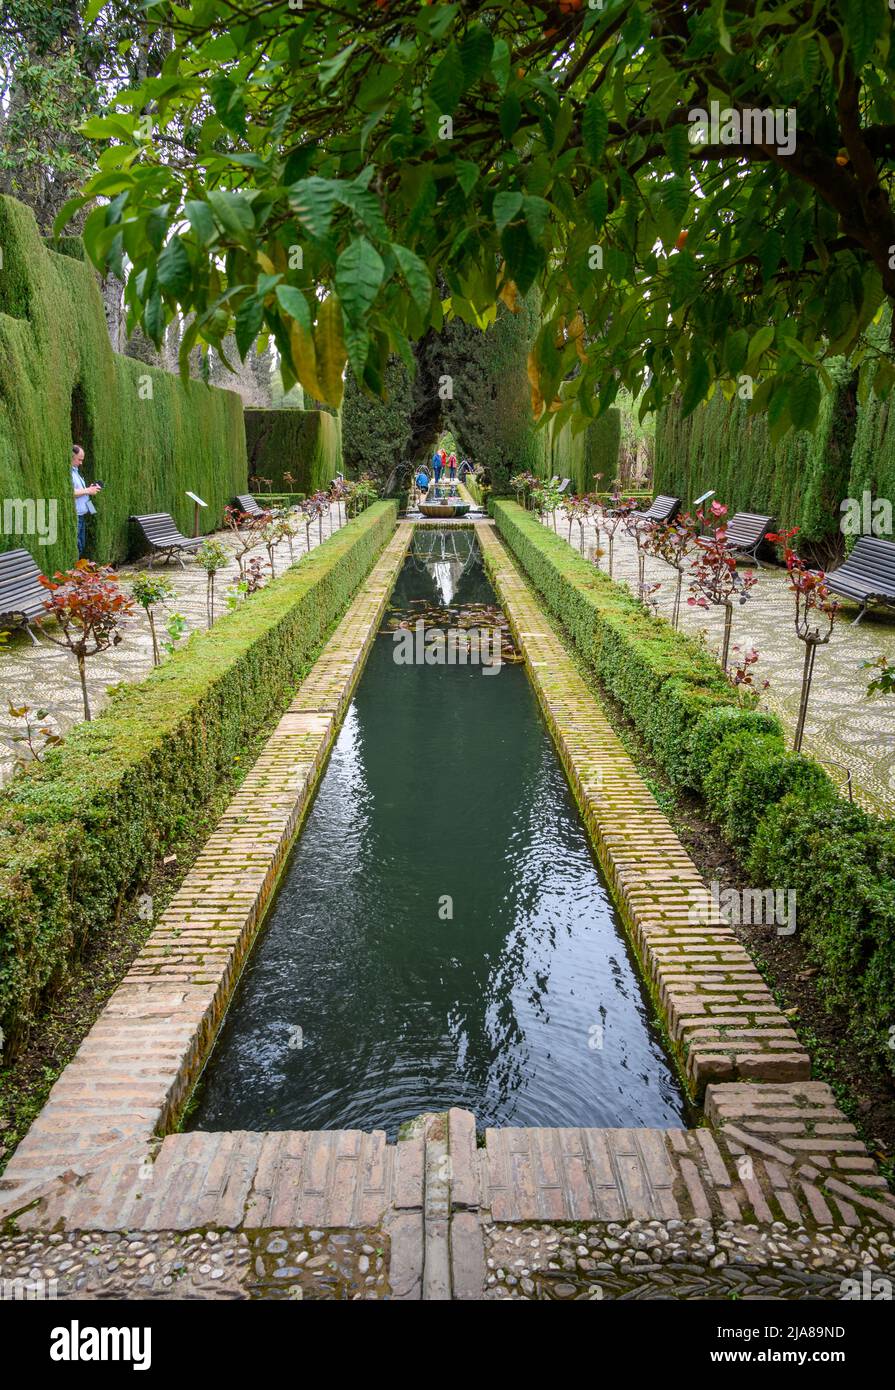 Jardines Bajo del Generalife, gardens and pond at Alhambra, Granada, Spain. Stock Photo